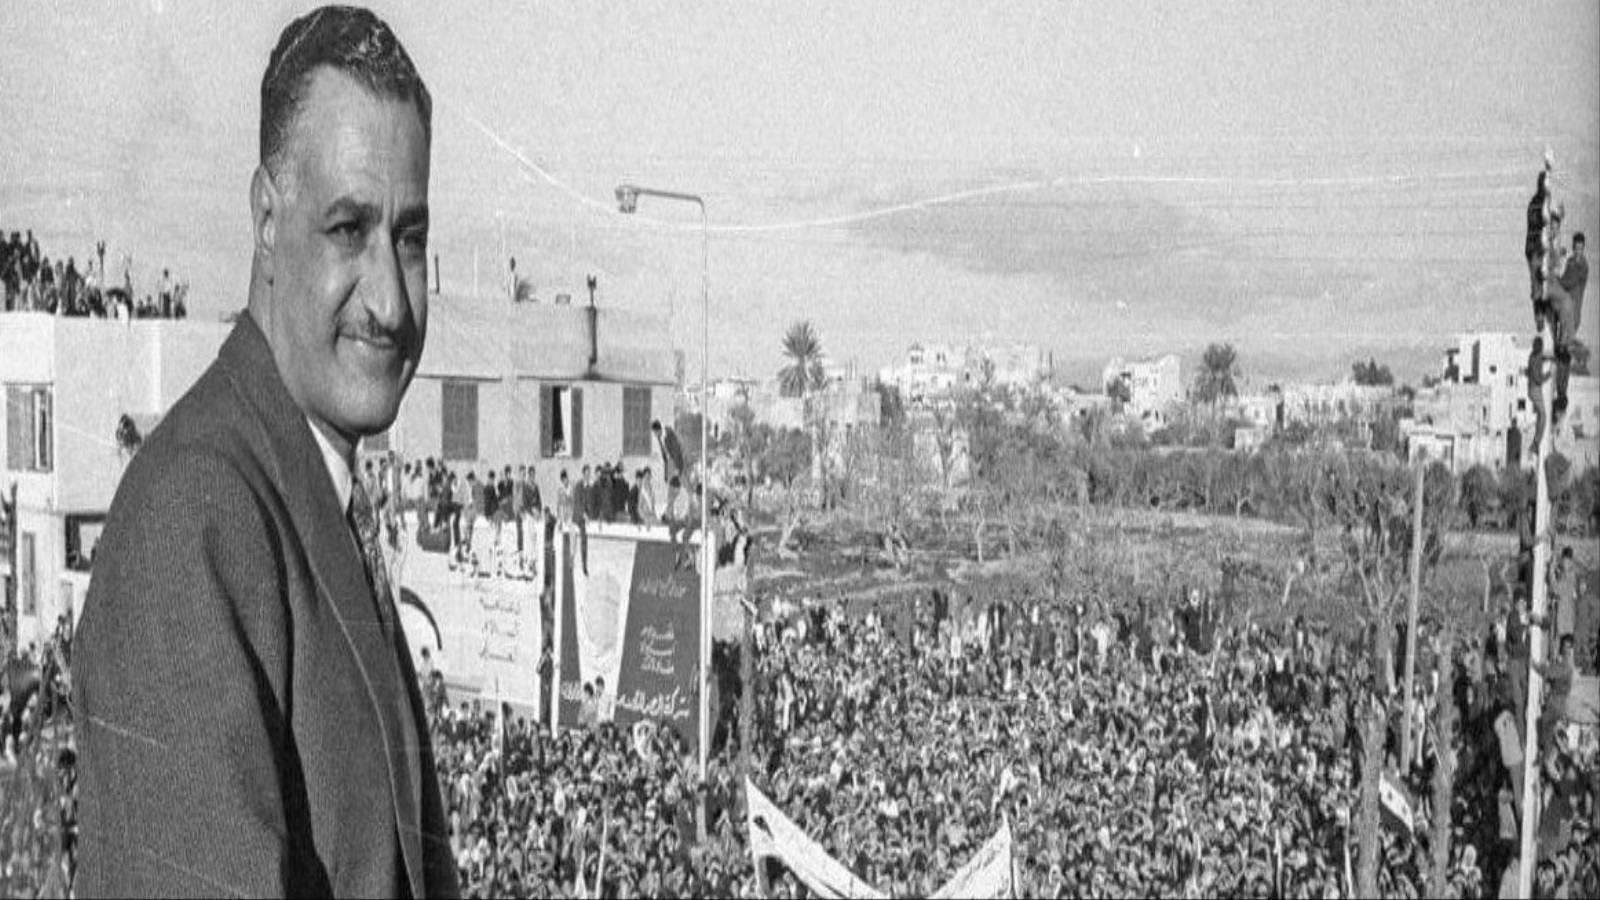 كان جمال عبد الناصر يساريا اشتراكيا، وكانت له طموحاته الإقليمية التي استطاع أن يهدد بها السعودية